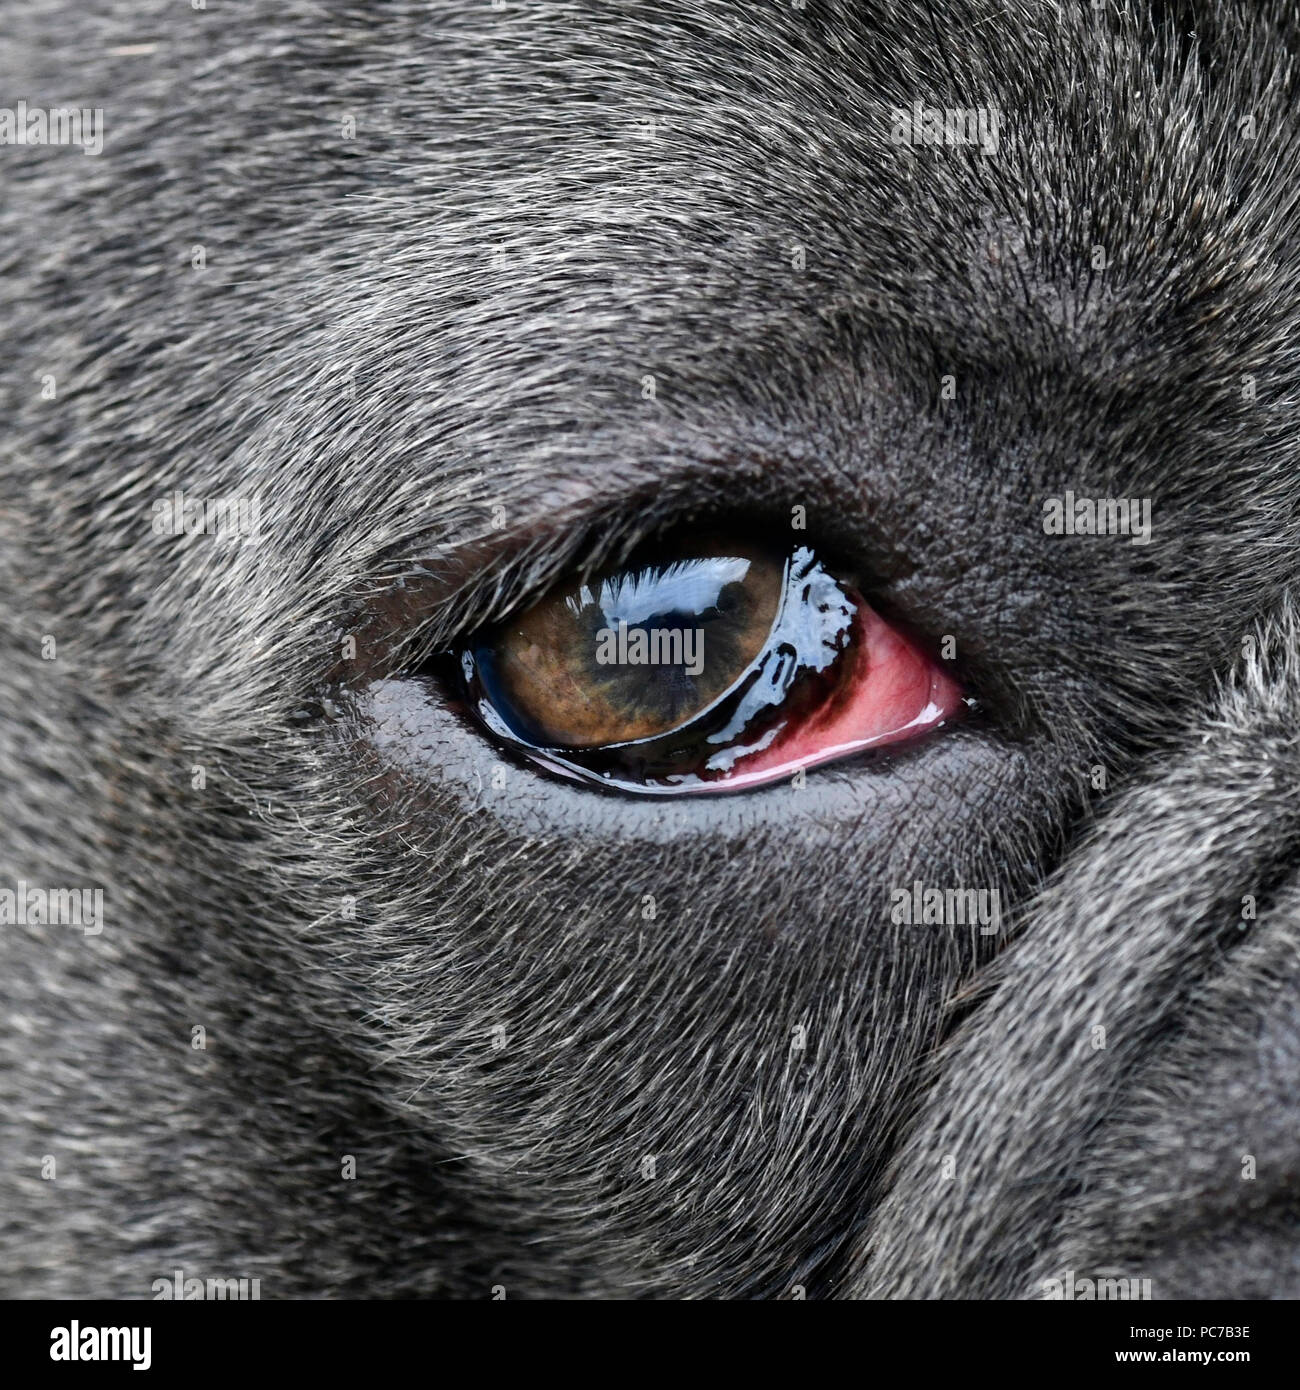 Blaue französische Bulldogge mit schlechten geschwollene Augen aufgrund  einer Infektion, Hunde Auge betrachtet von der Seite, in einem  quadratischen Format, selektiven Fokus auf Anzeige Kopie Stockfotografie -  Alamy